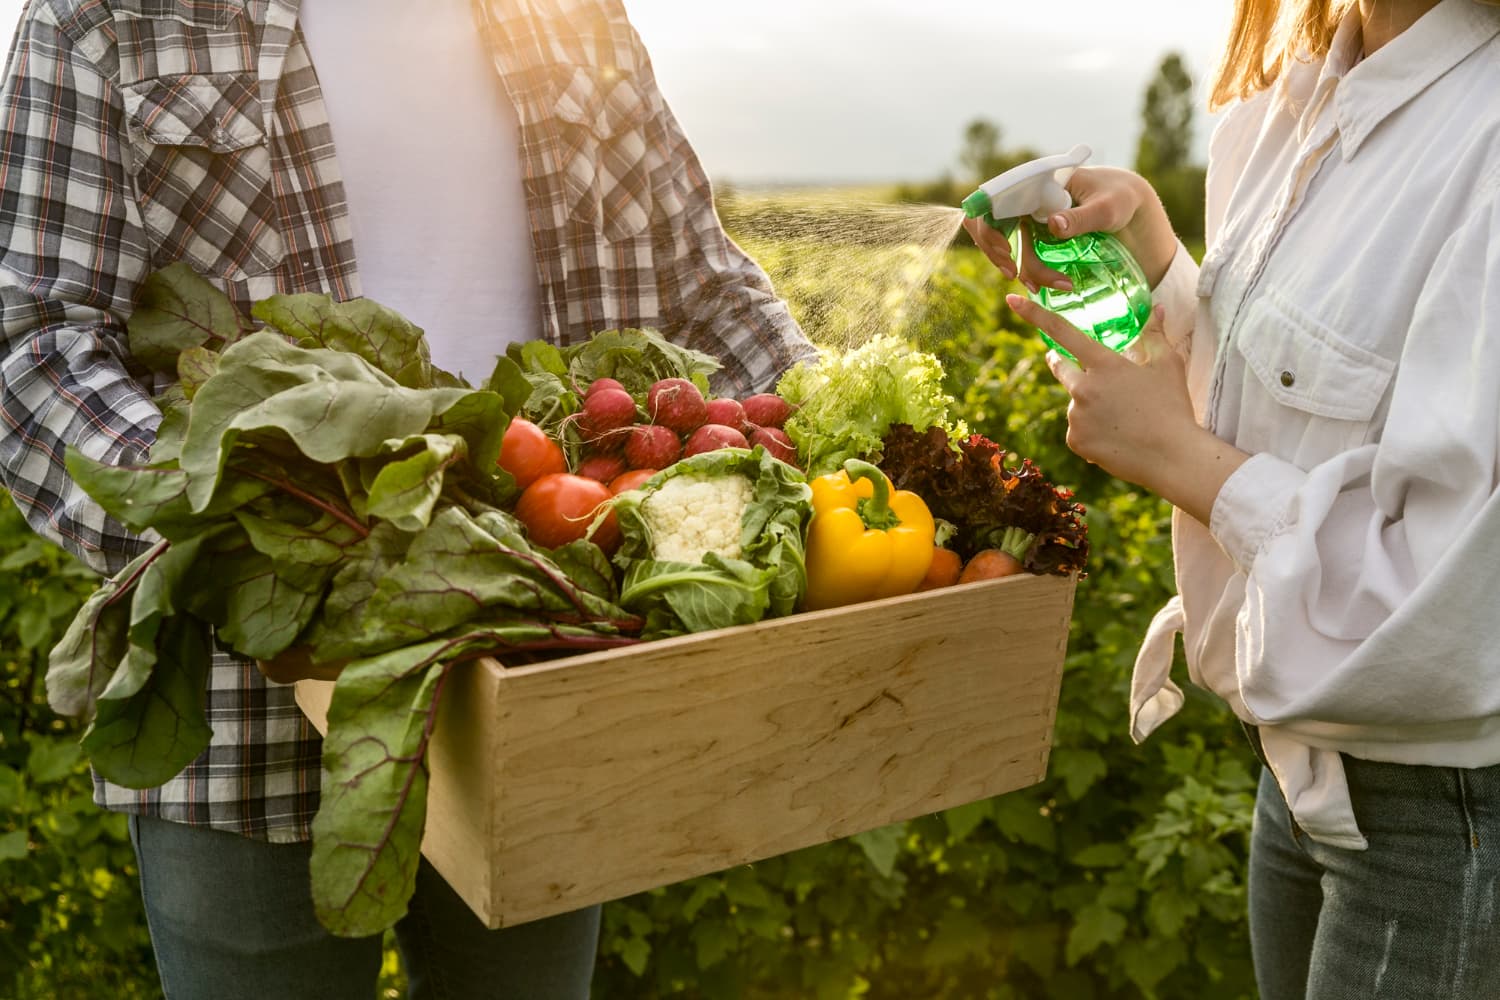 7 октября в Праге будет организован фермерский рынок с органическими продуктами